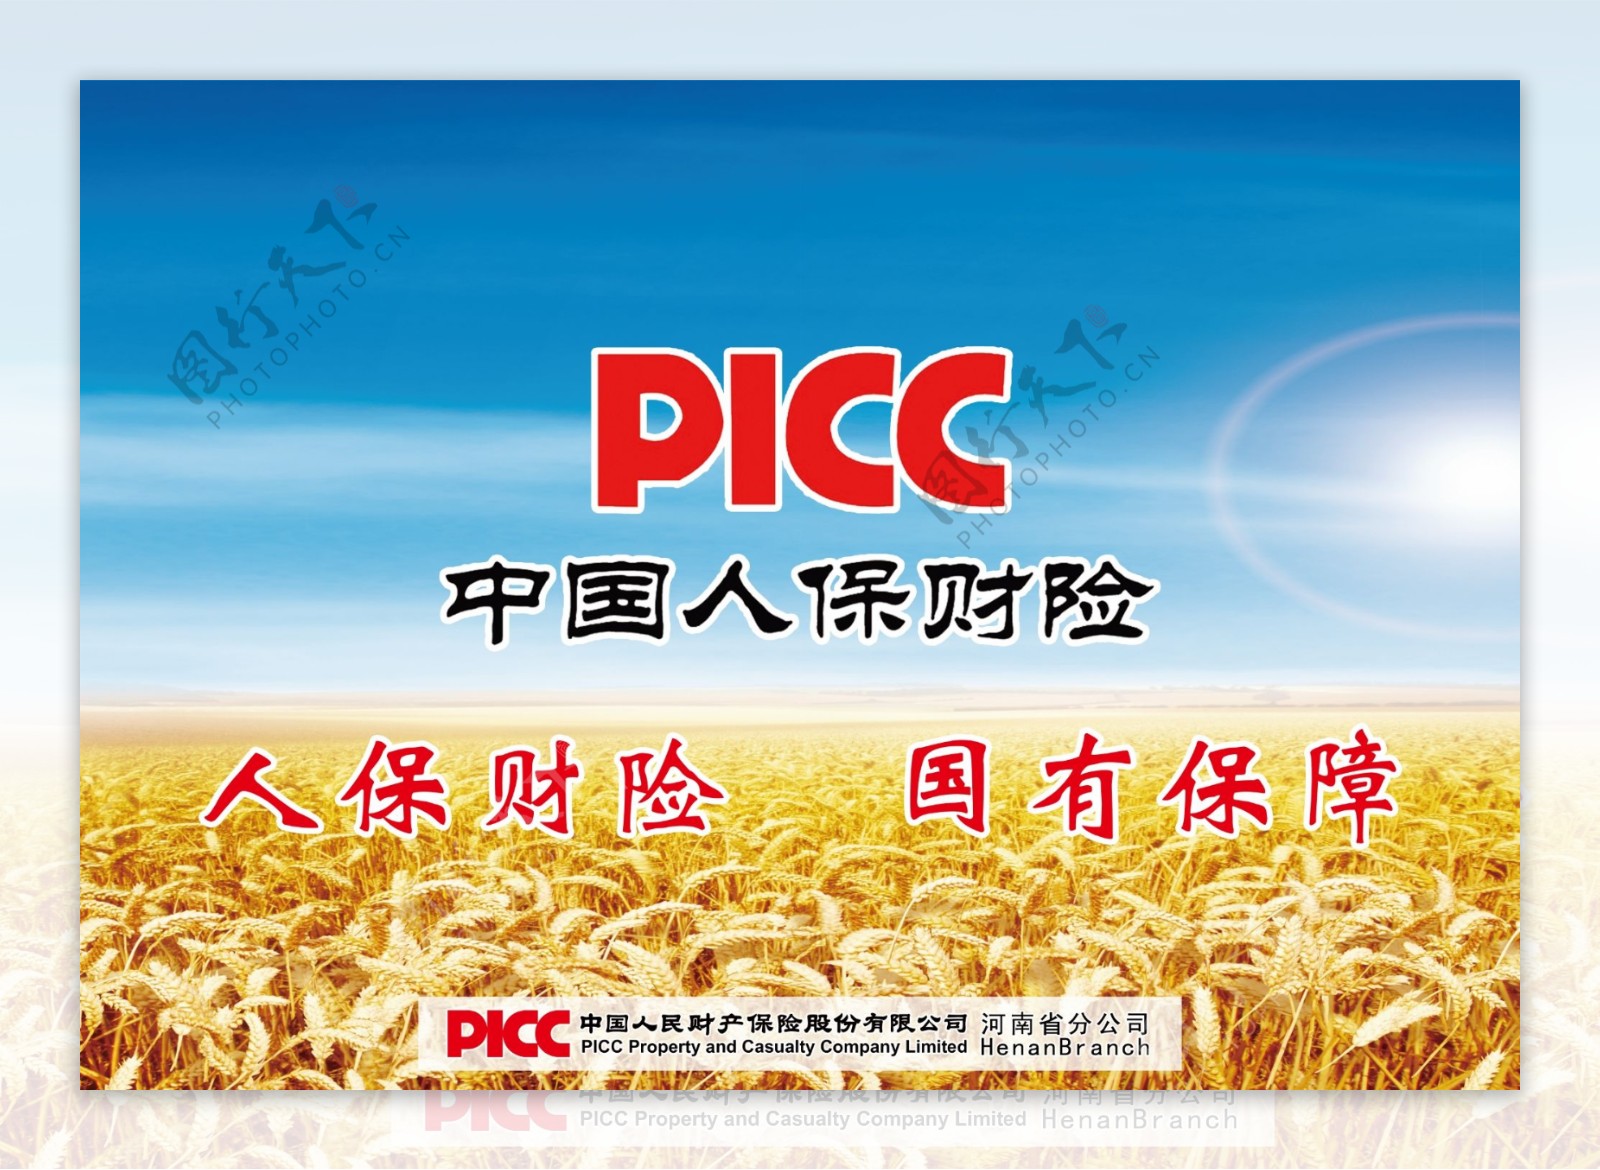 中国人保财picc广告彩页